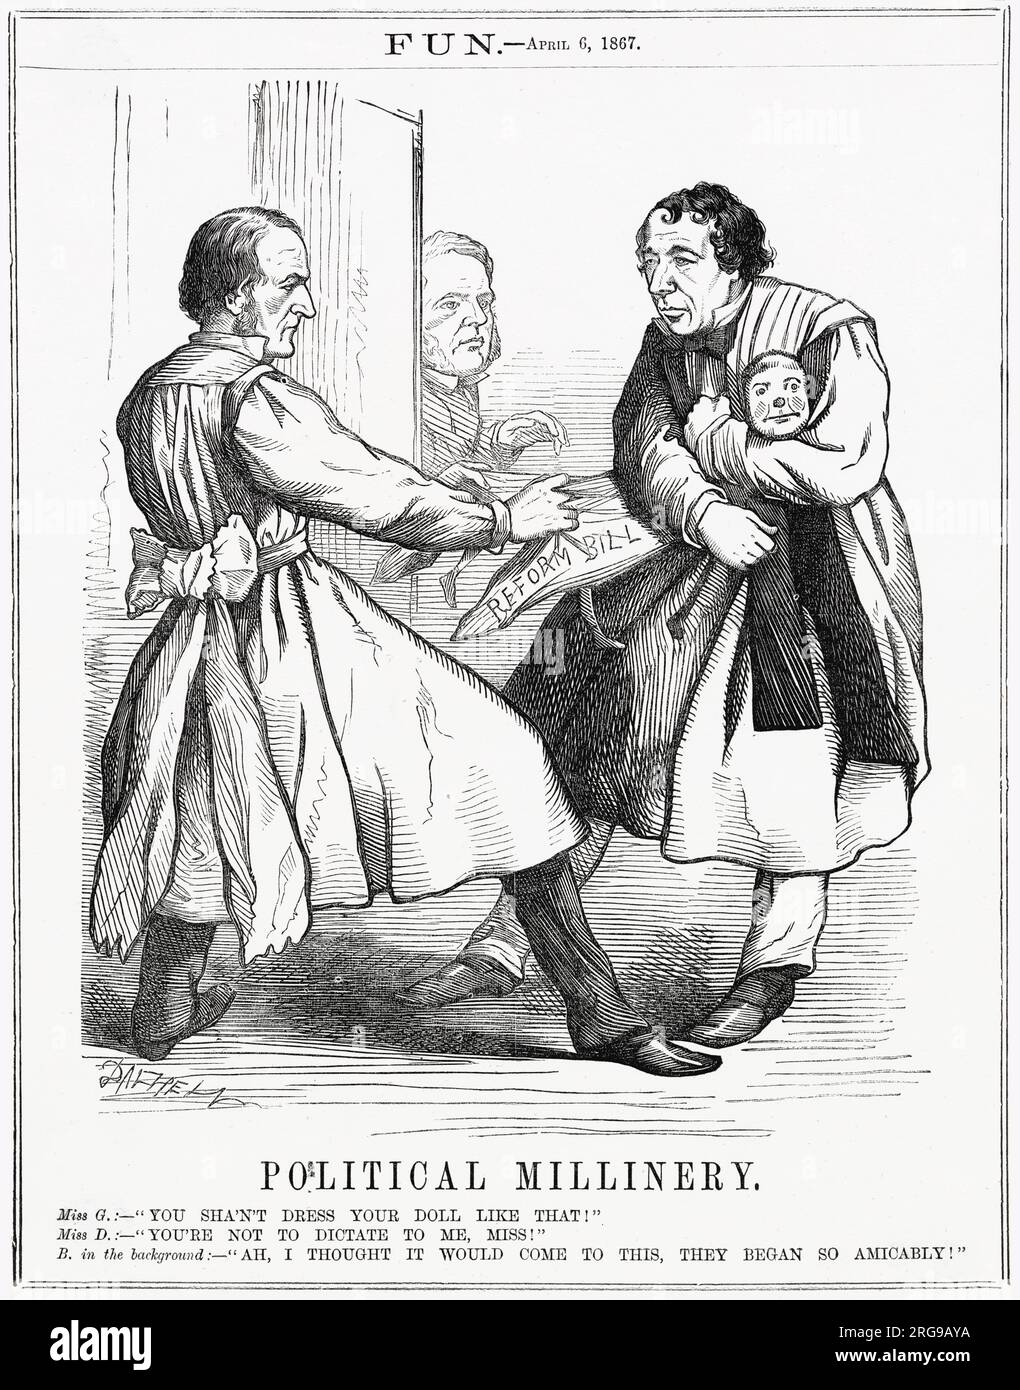 Cartone animato, Political Millinery -- un commento satirico sul disaccordo tra Gladstone e Disraeli sui dettagli della riforma elettorale. Il deputato radicale liberale John Bright guarda sullo sfondo. Foto Stock